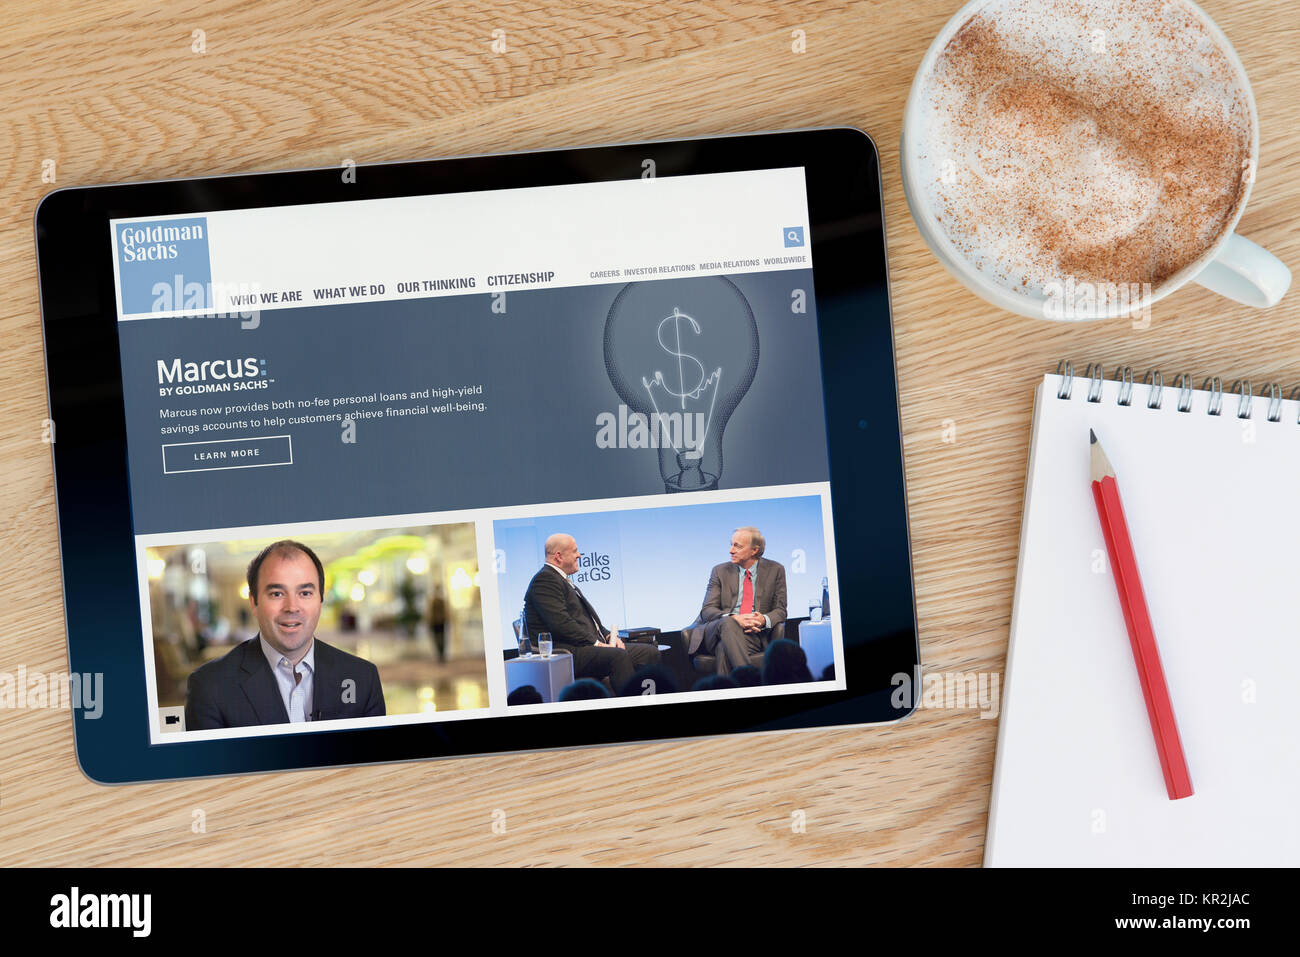 El sitio web de Goldman Sachs en un dispositivo tablet iPad que descansa sobre una mesa de madera junto a un bloc de notas y lápiz y una taza de café (Editorial) Foto de stock